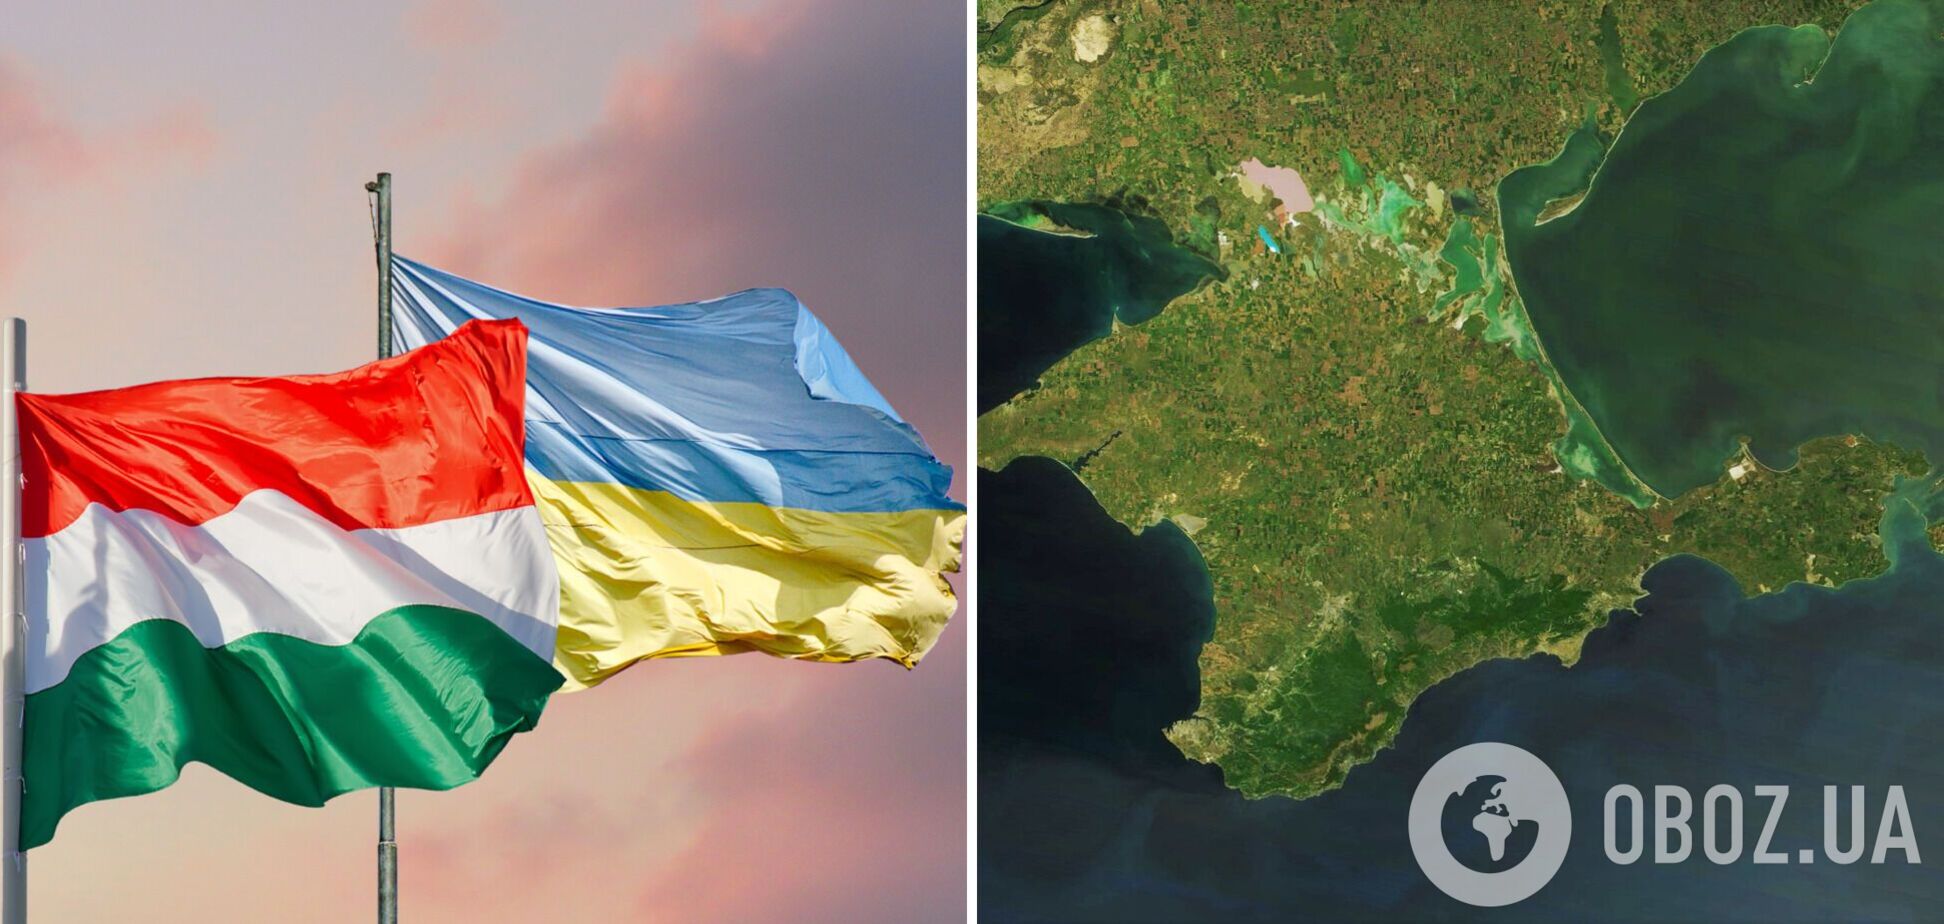 МЗС України оголосило Угорщині демарш через відео із картою України без Криму: всі деталі скандалу